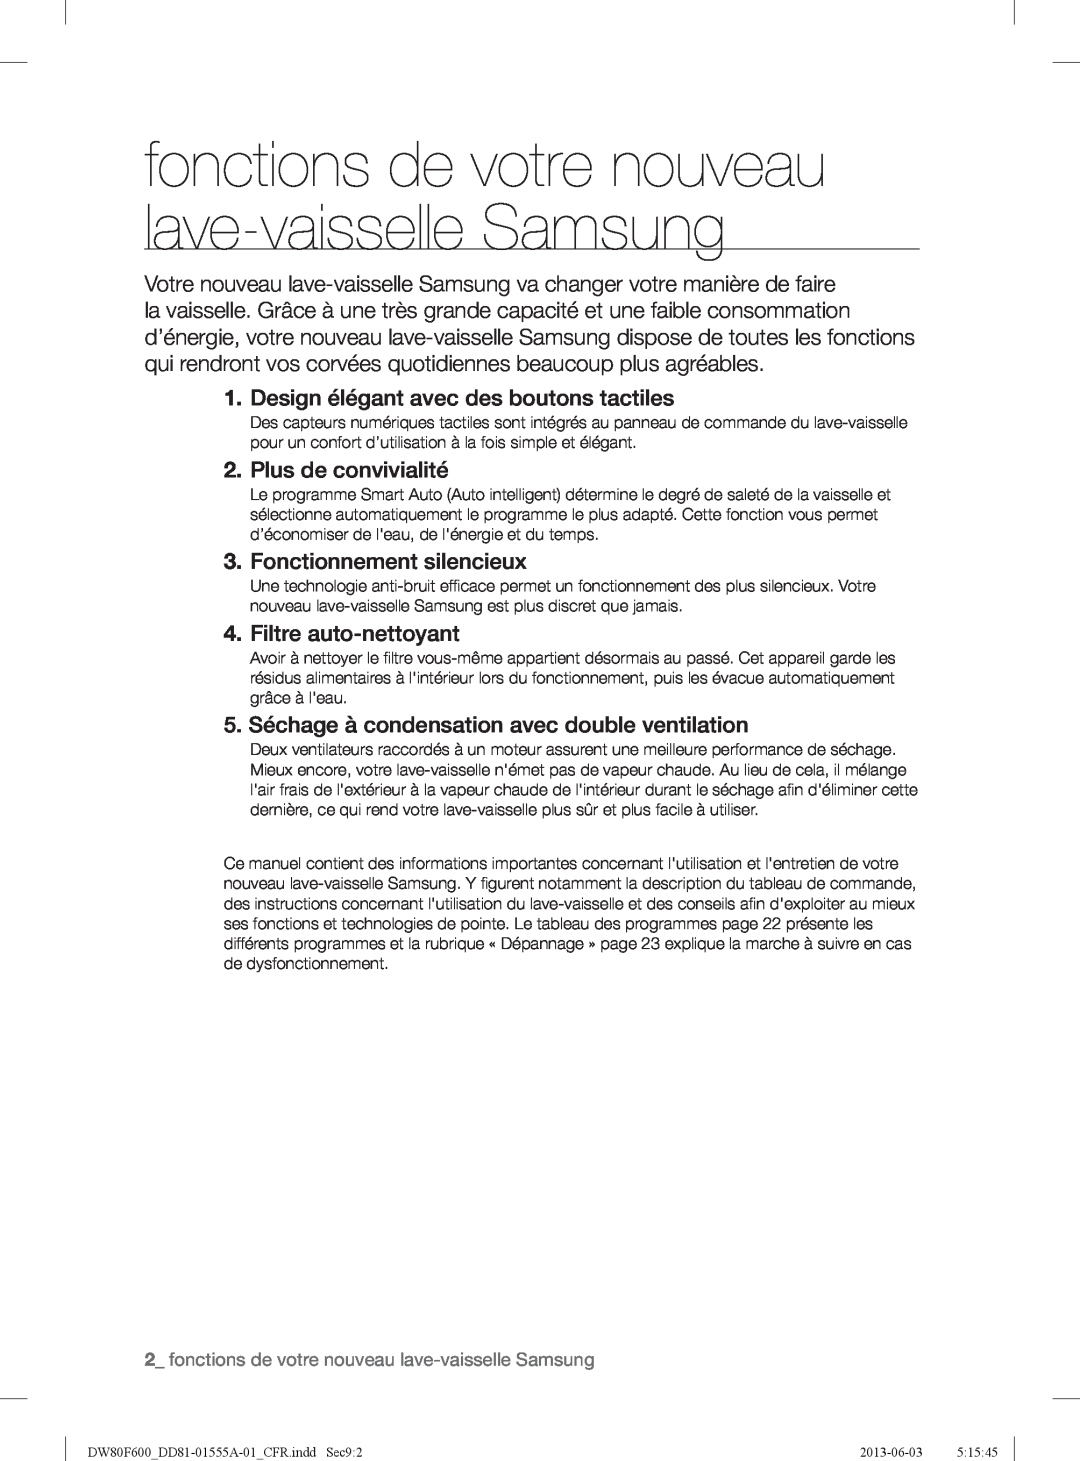 Samsung DW80F600UTB user manual fonctions de votre nouveau lave-vaisselle Samsung, Design élégant avec des boutons tactiles 